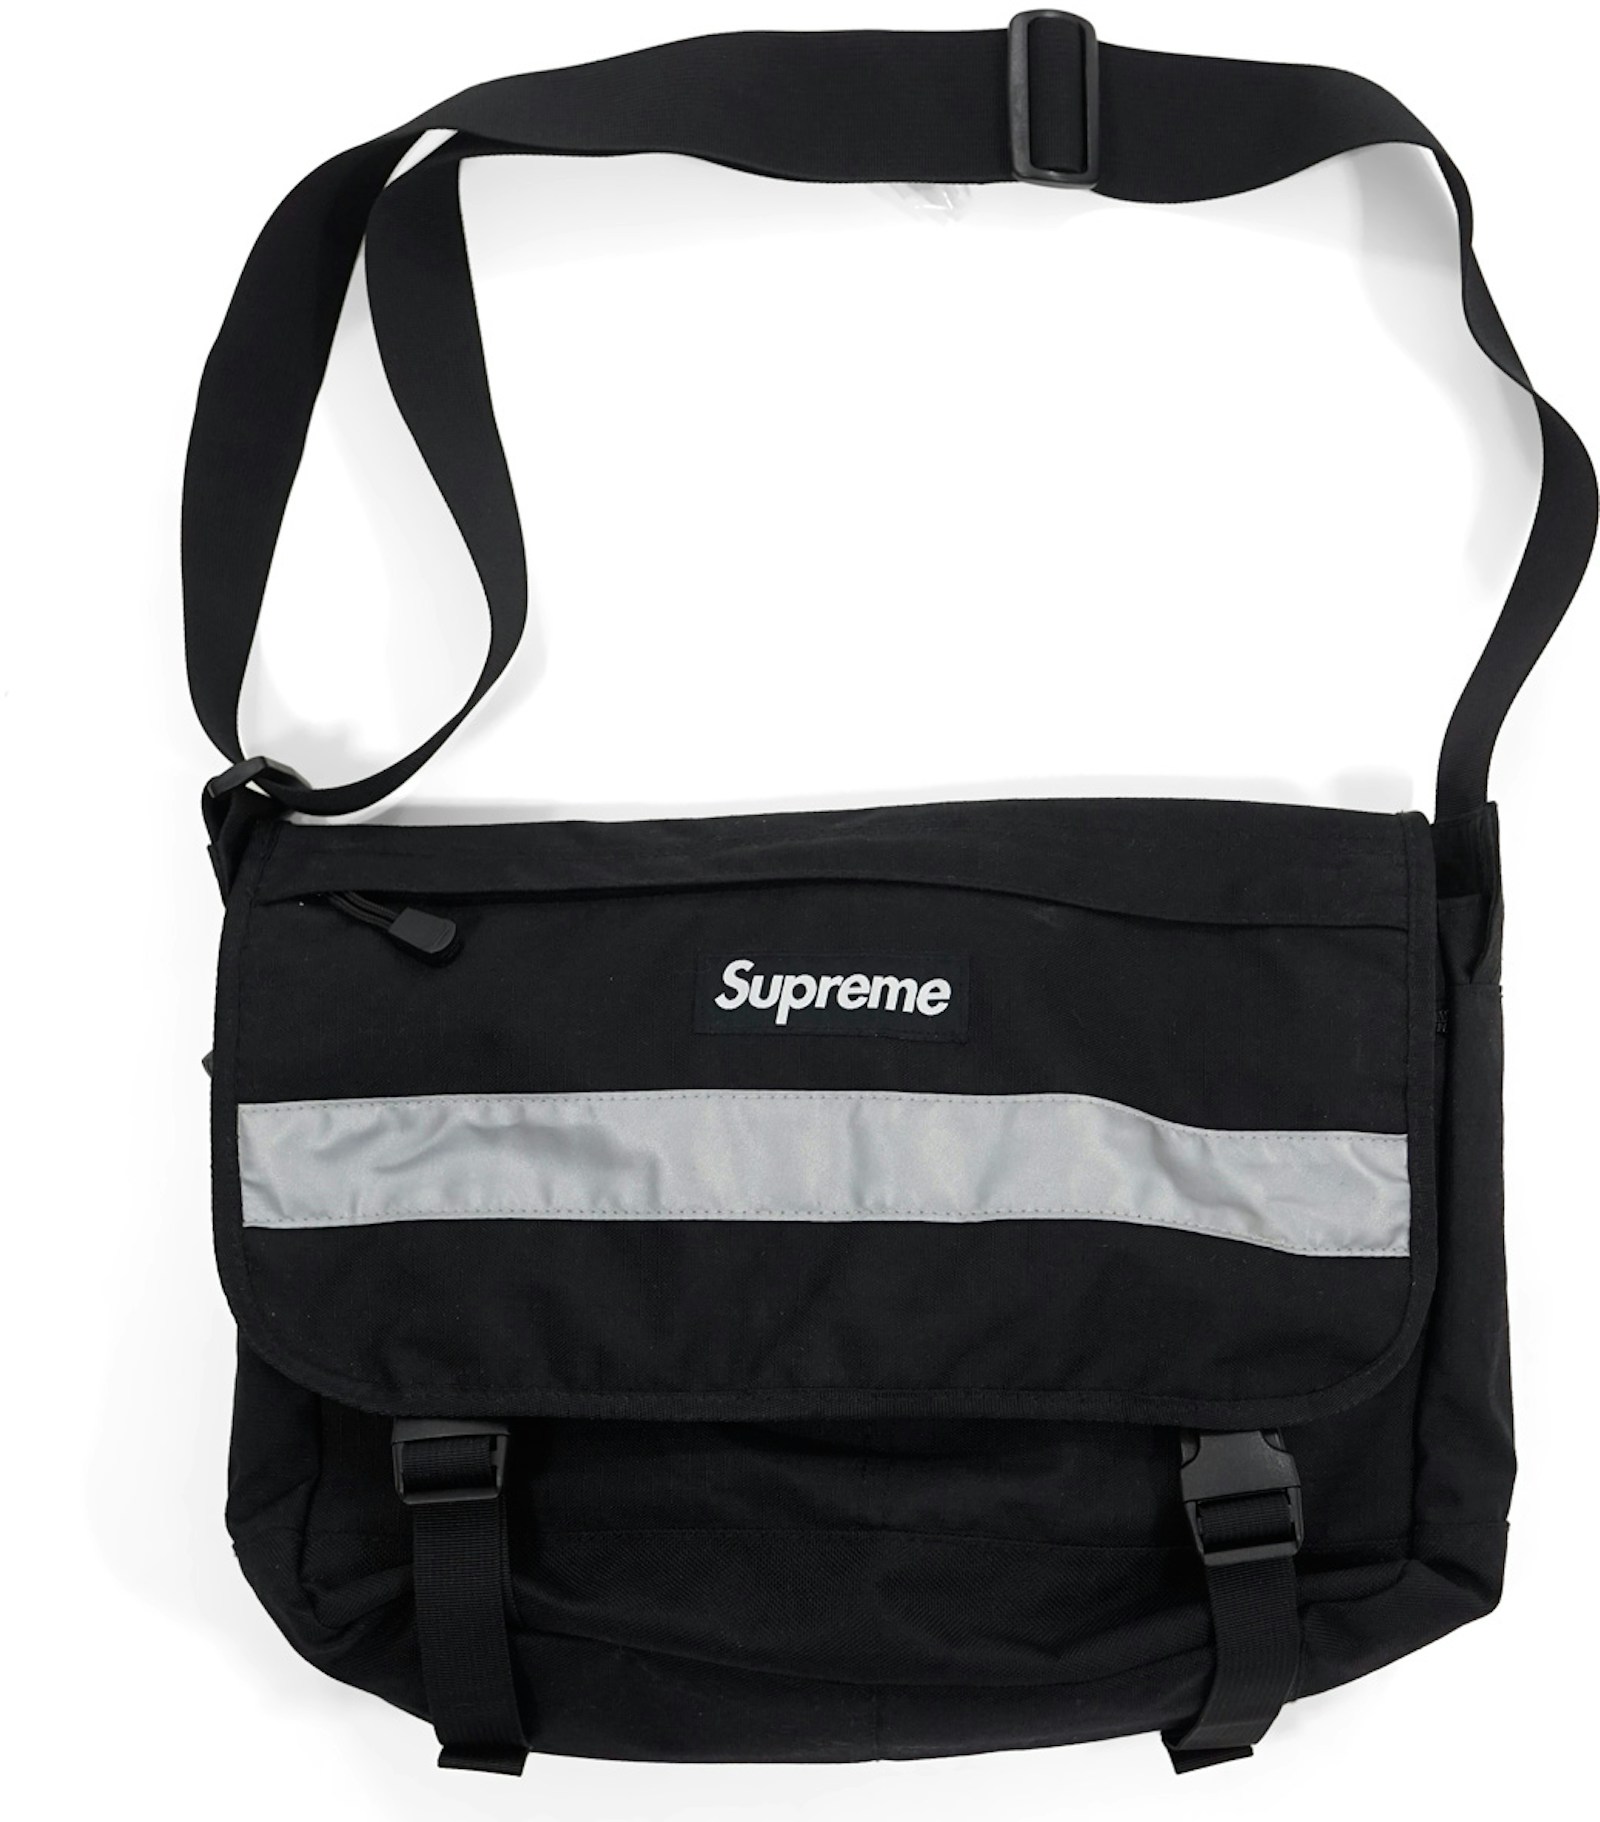 Supreme Hi Vis Messenger Bag Black - FW14